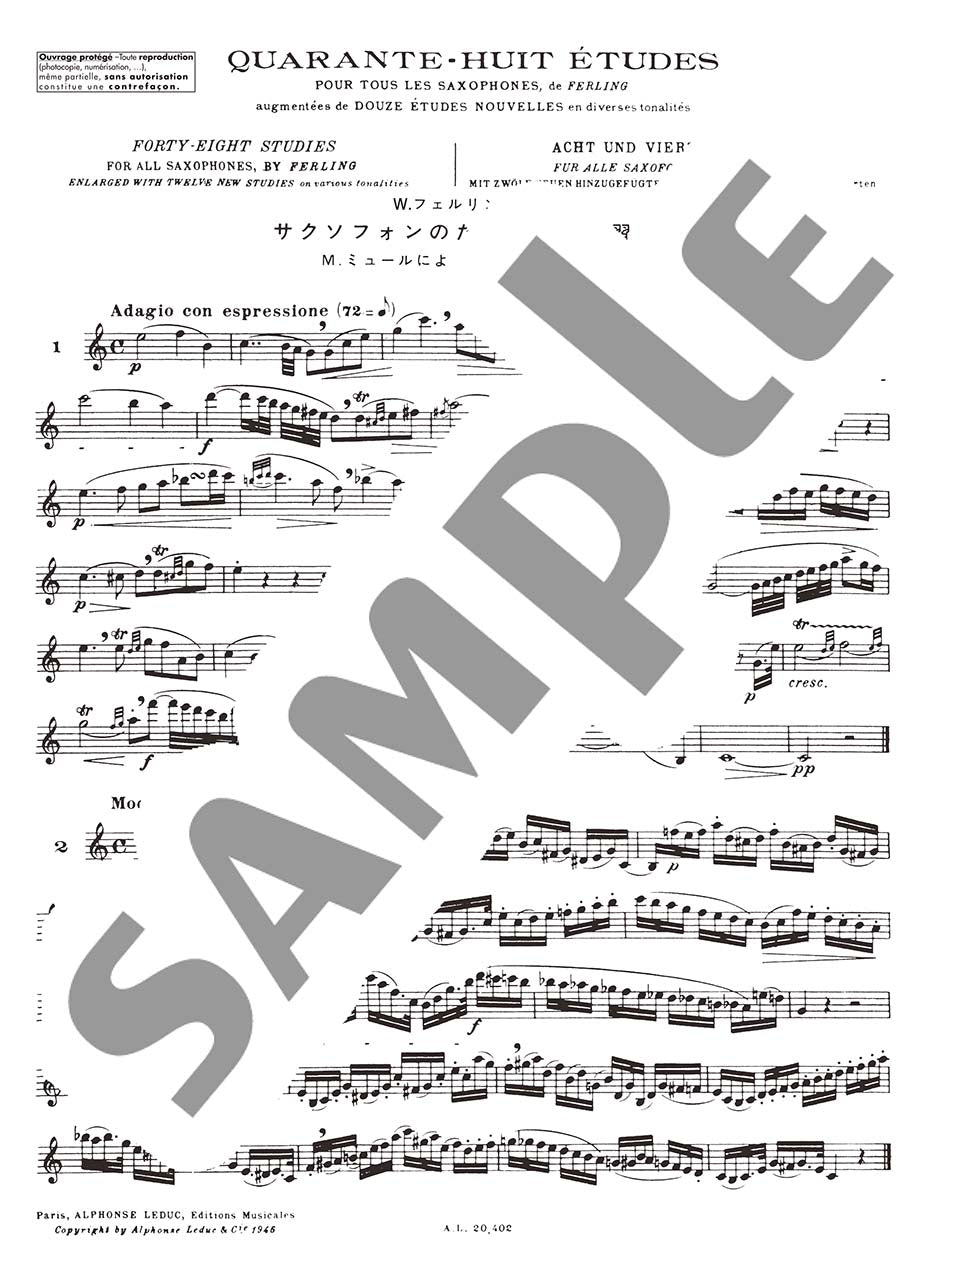 フェルリング/ミュール:サクソフォンのための48の練習曲 ルデュック社ライセンス版_2